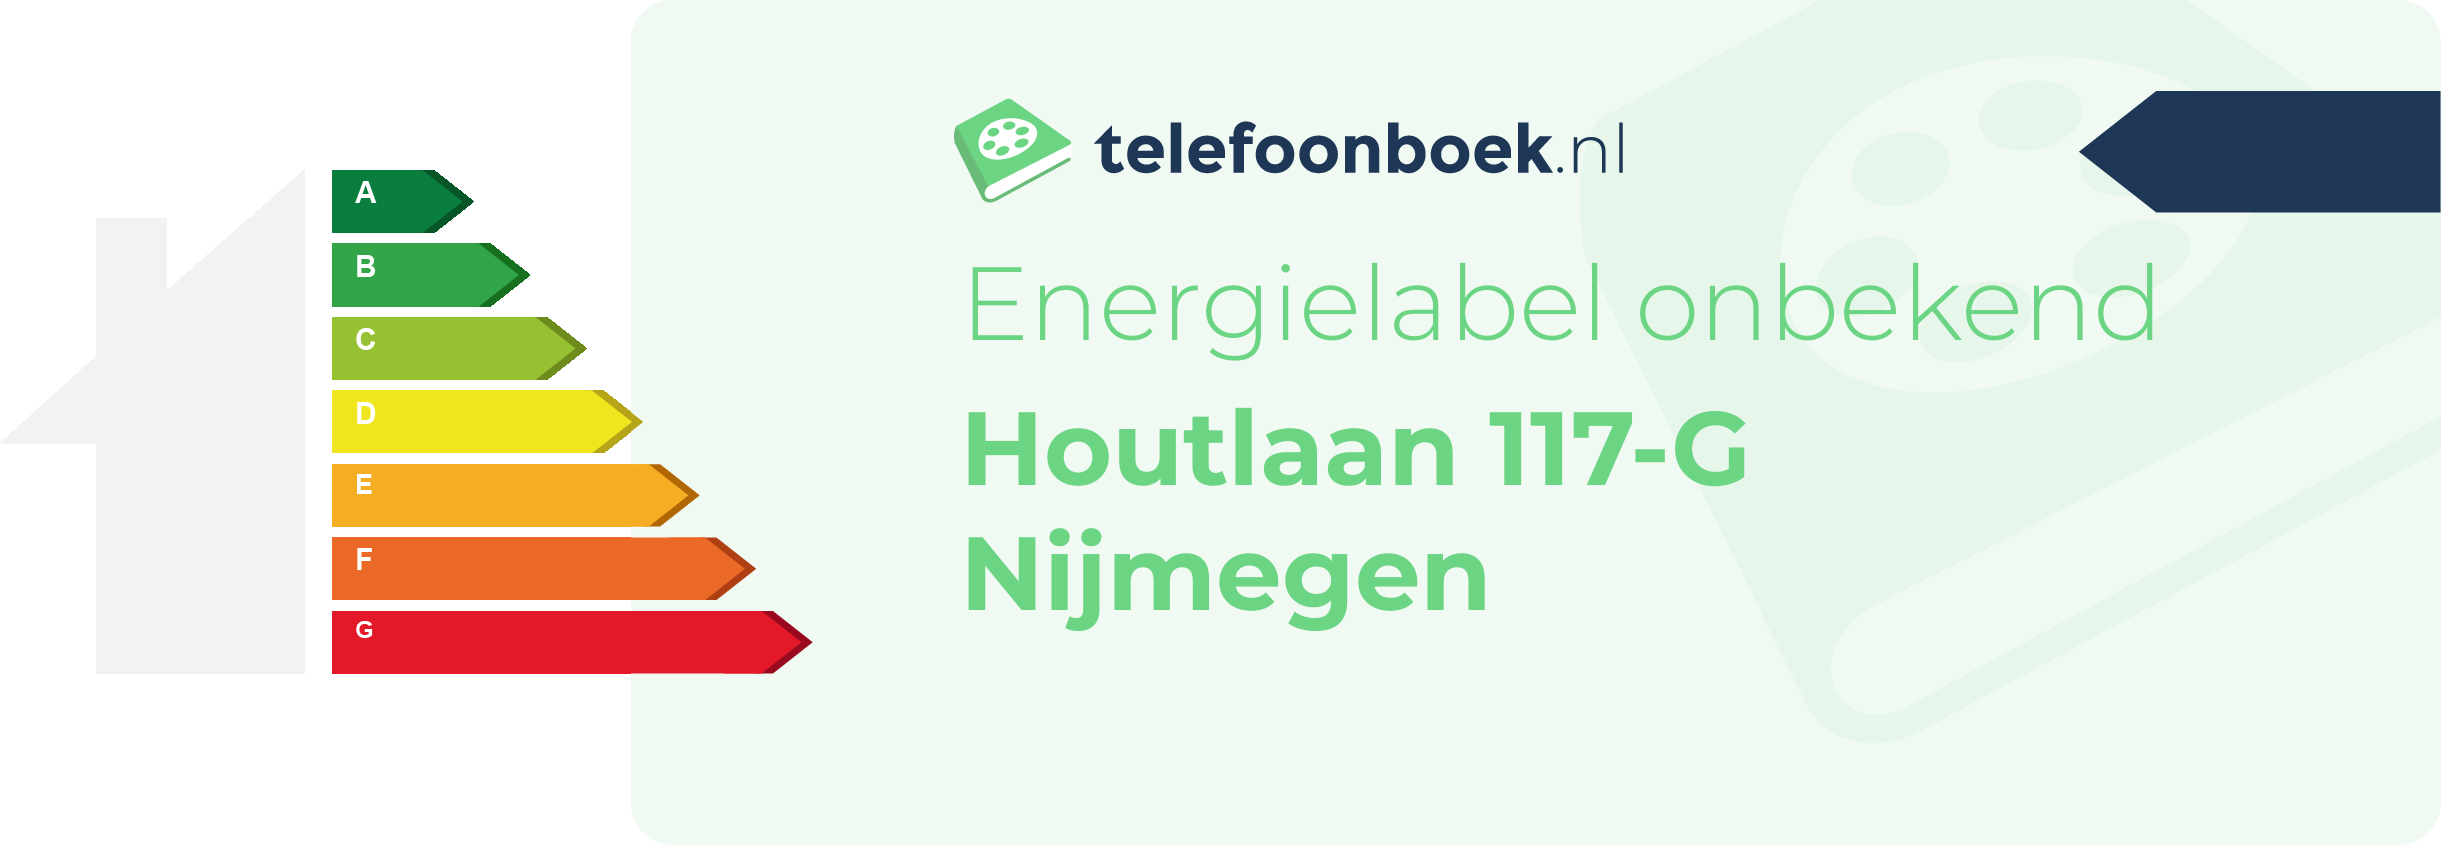 Energielabel Houtlaan 117-G Nijmegen